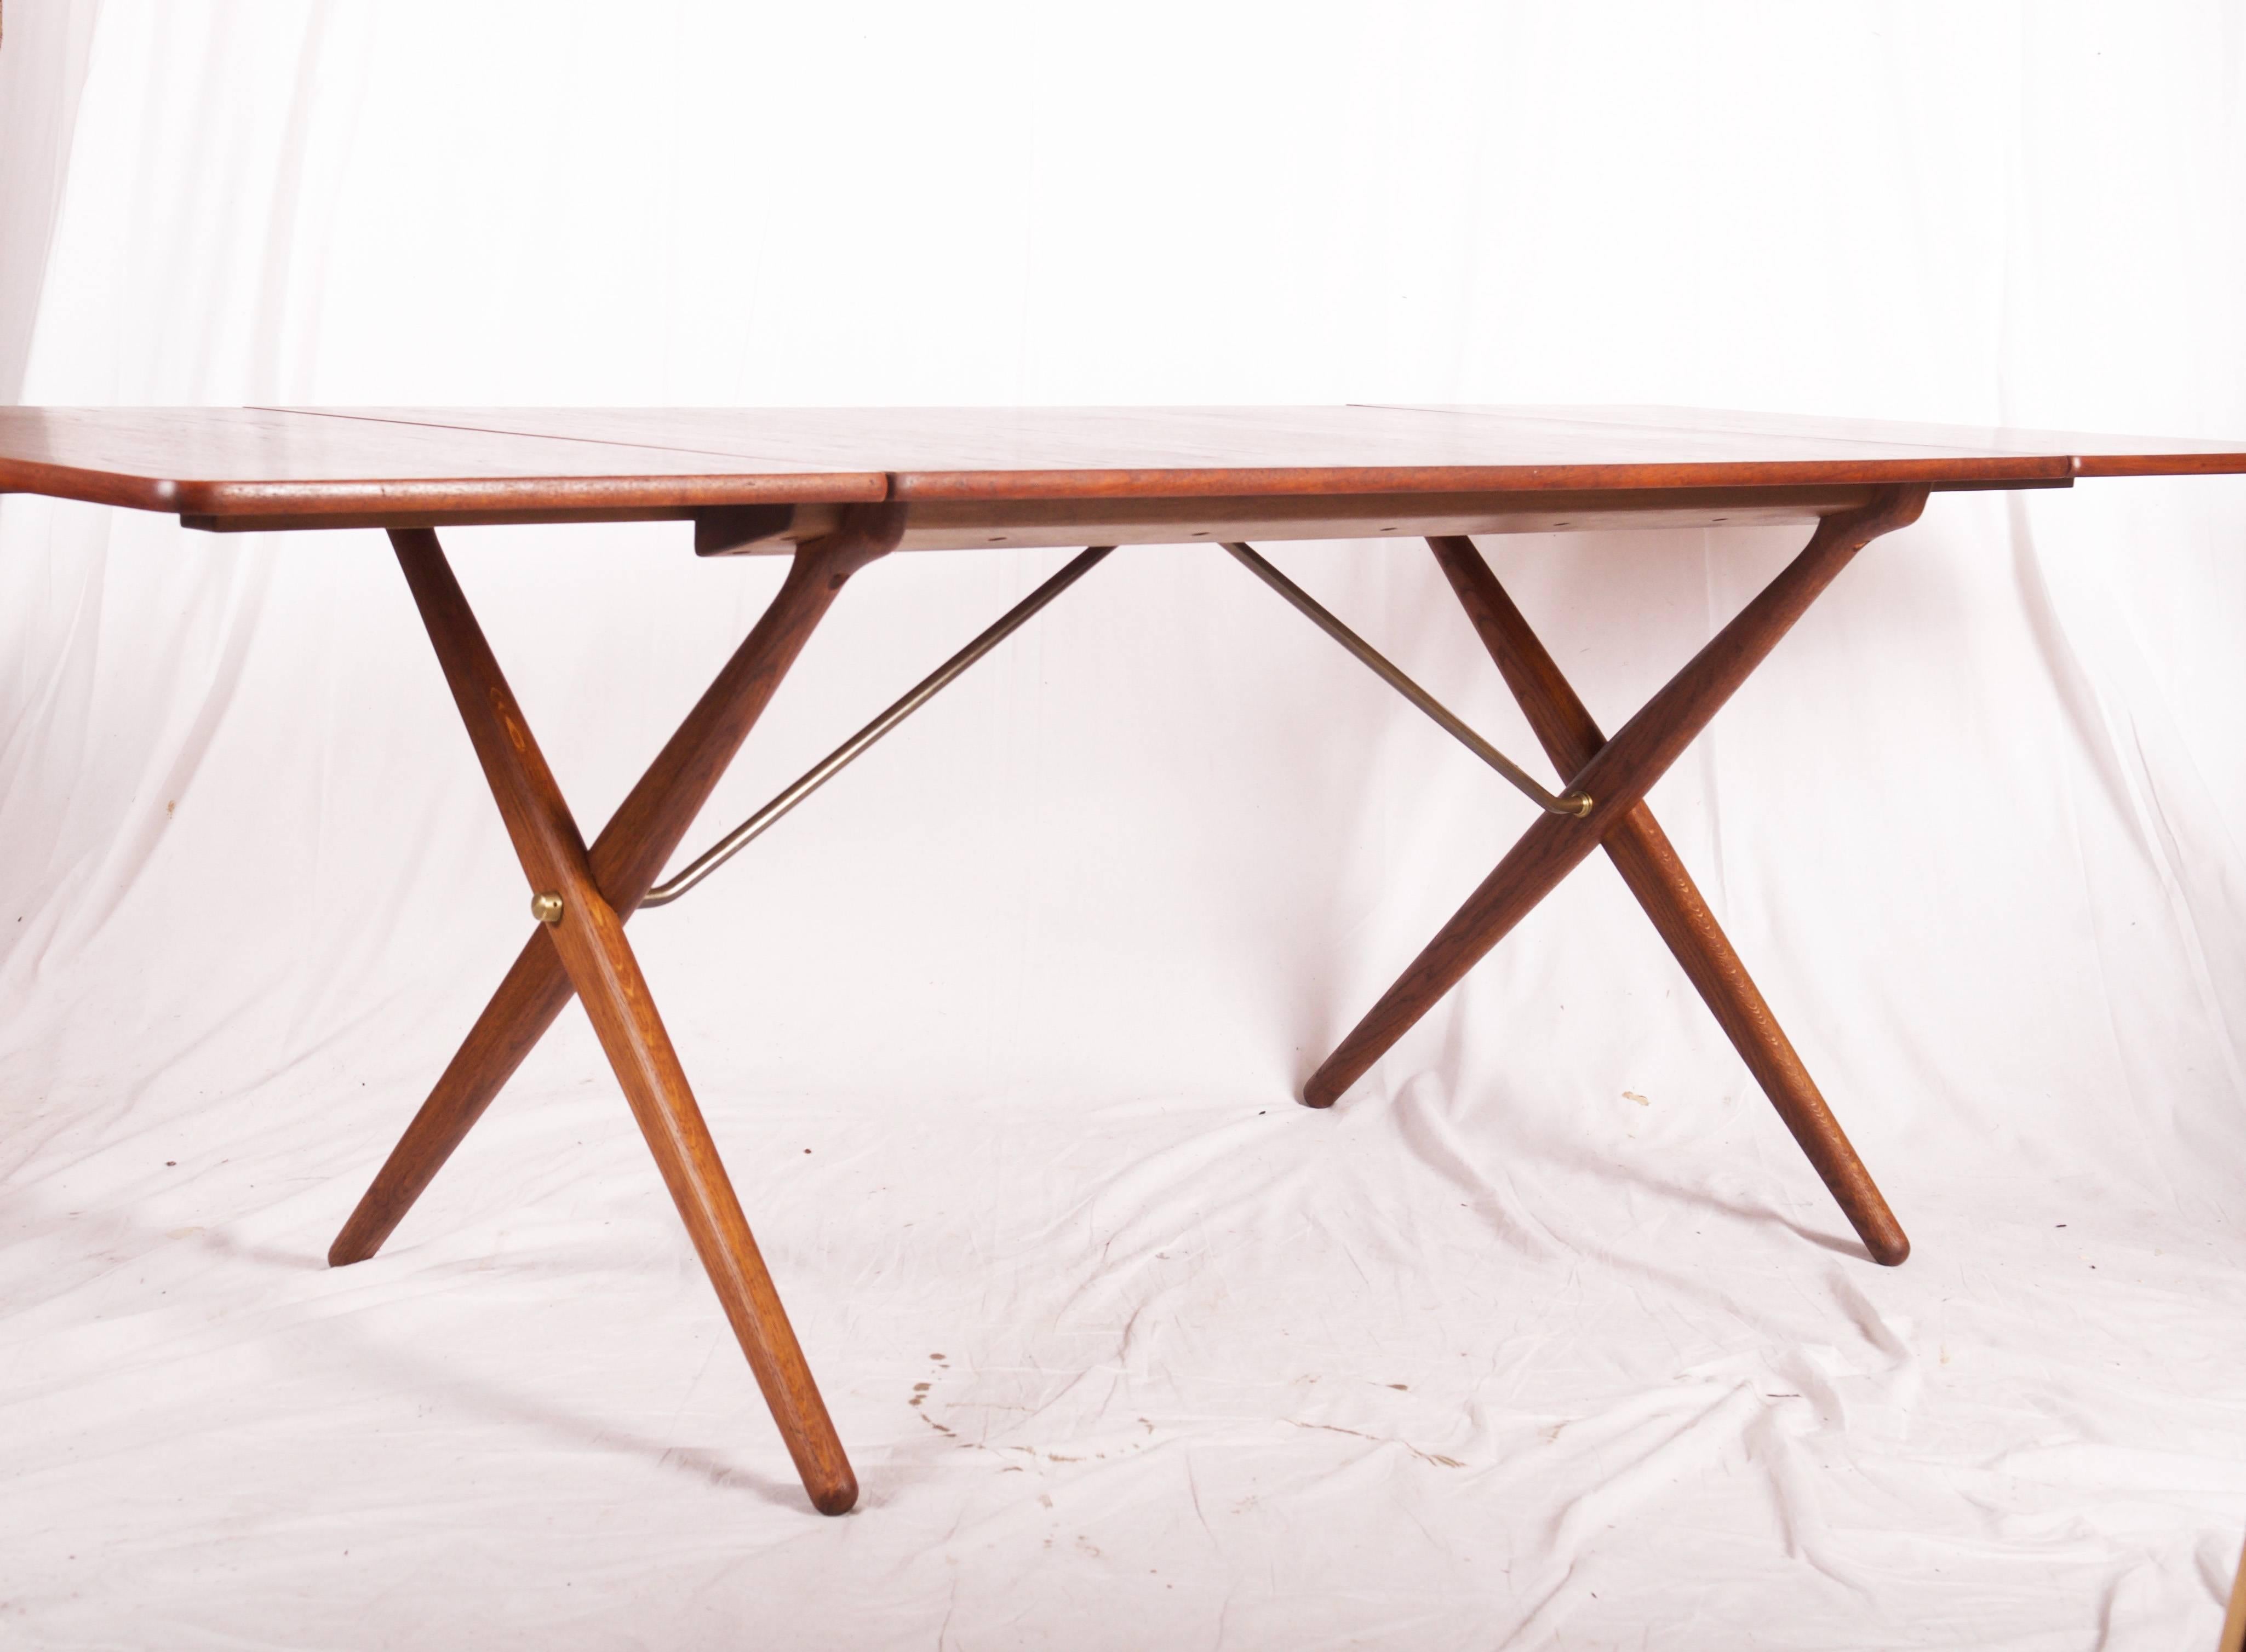 Table de salle à manger de Hans J. Wegner conçue en 1952 et fabriquée par Andreas Tuck, modèle AT-309. Mention dans le catalogue 1952. Pieds croisés en chêne massif avec base en laiton. Plateau de table en teck. (Longueur maximale 228 cm. environ